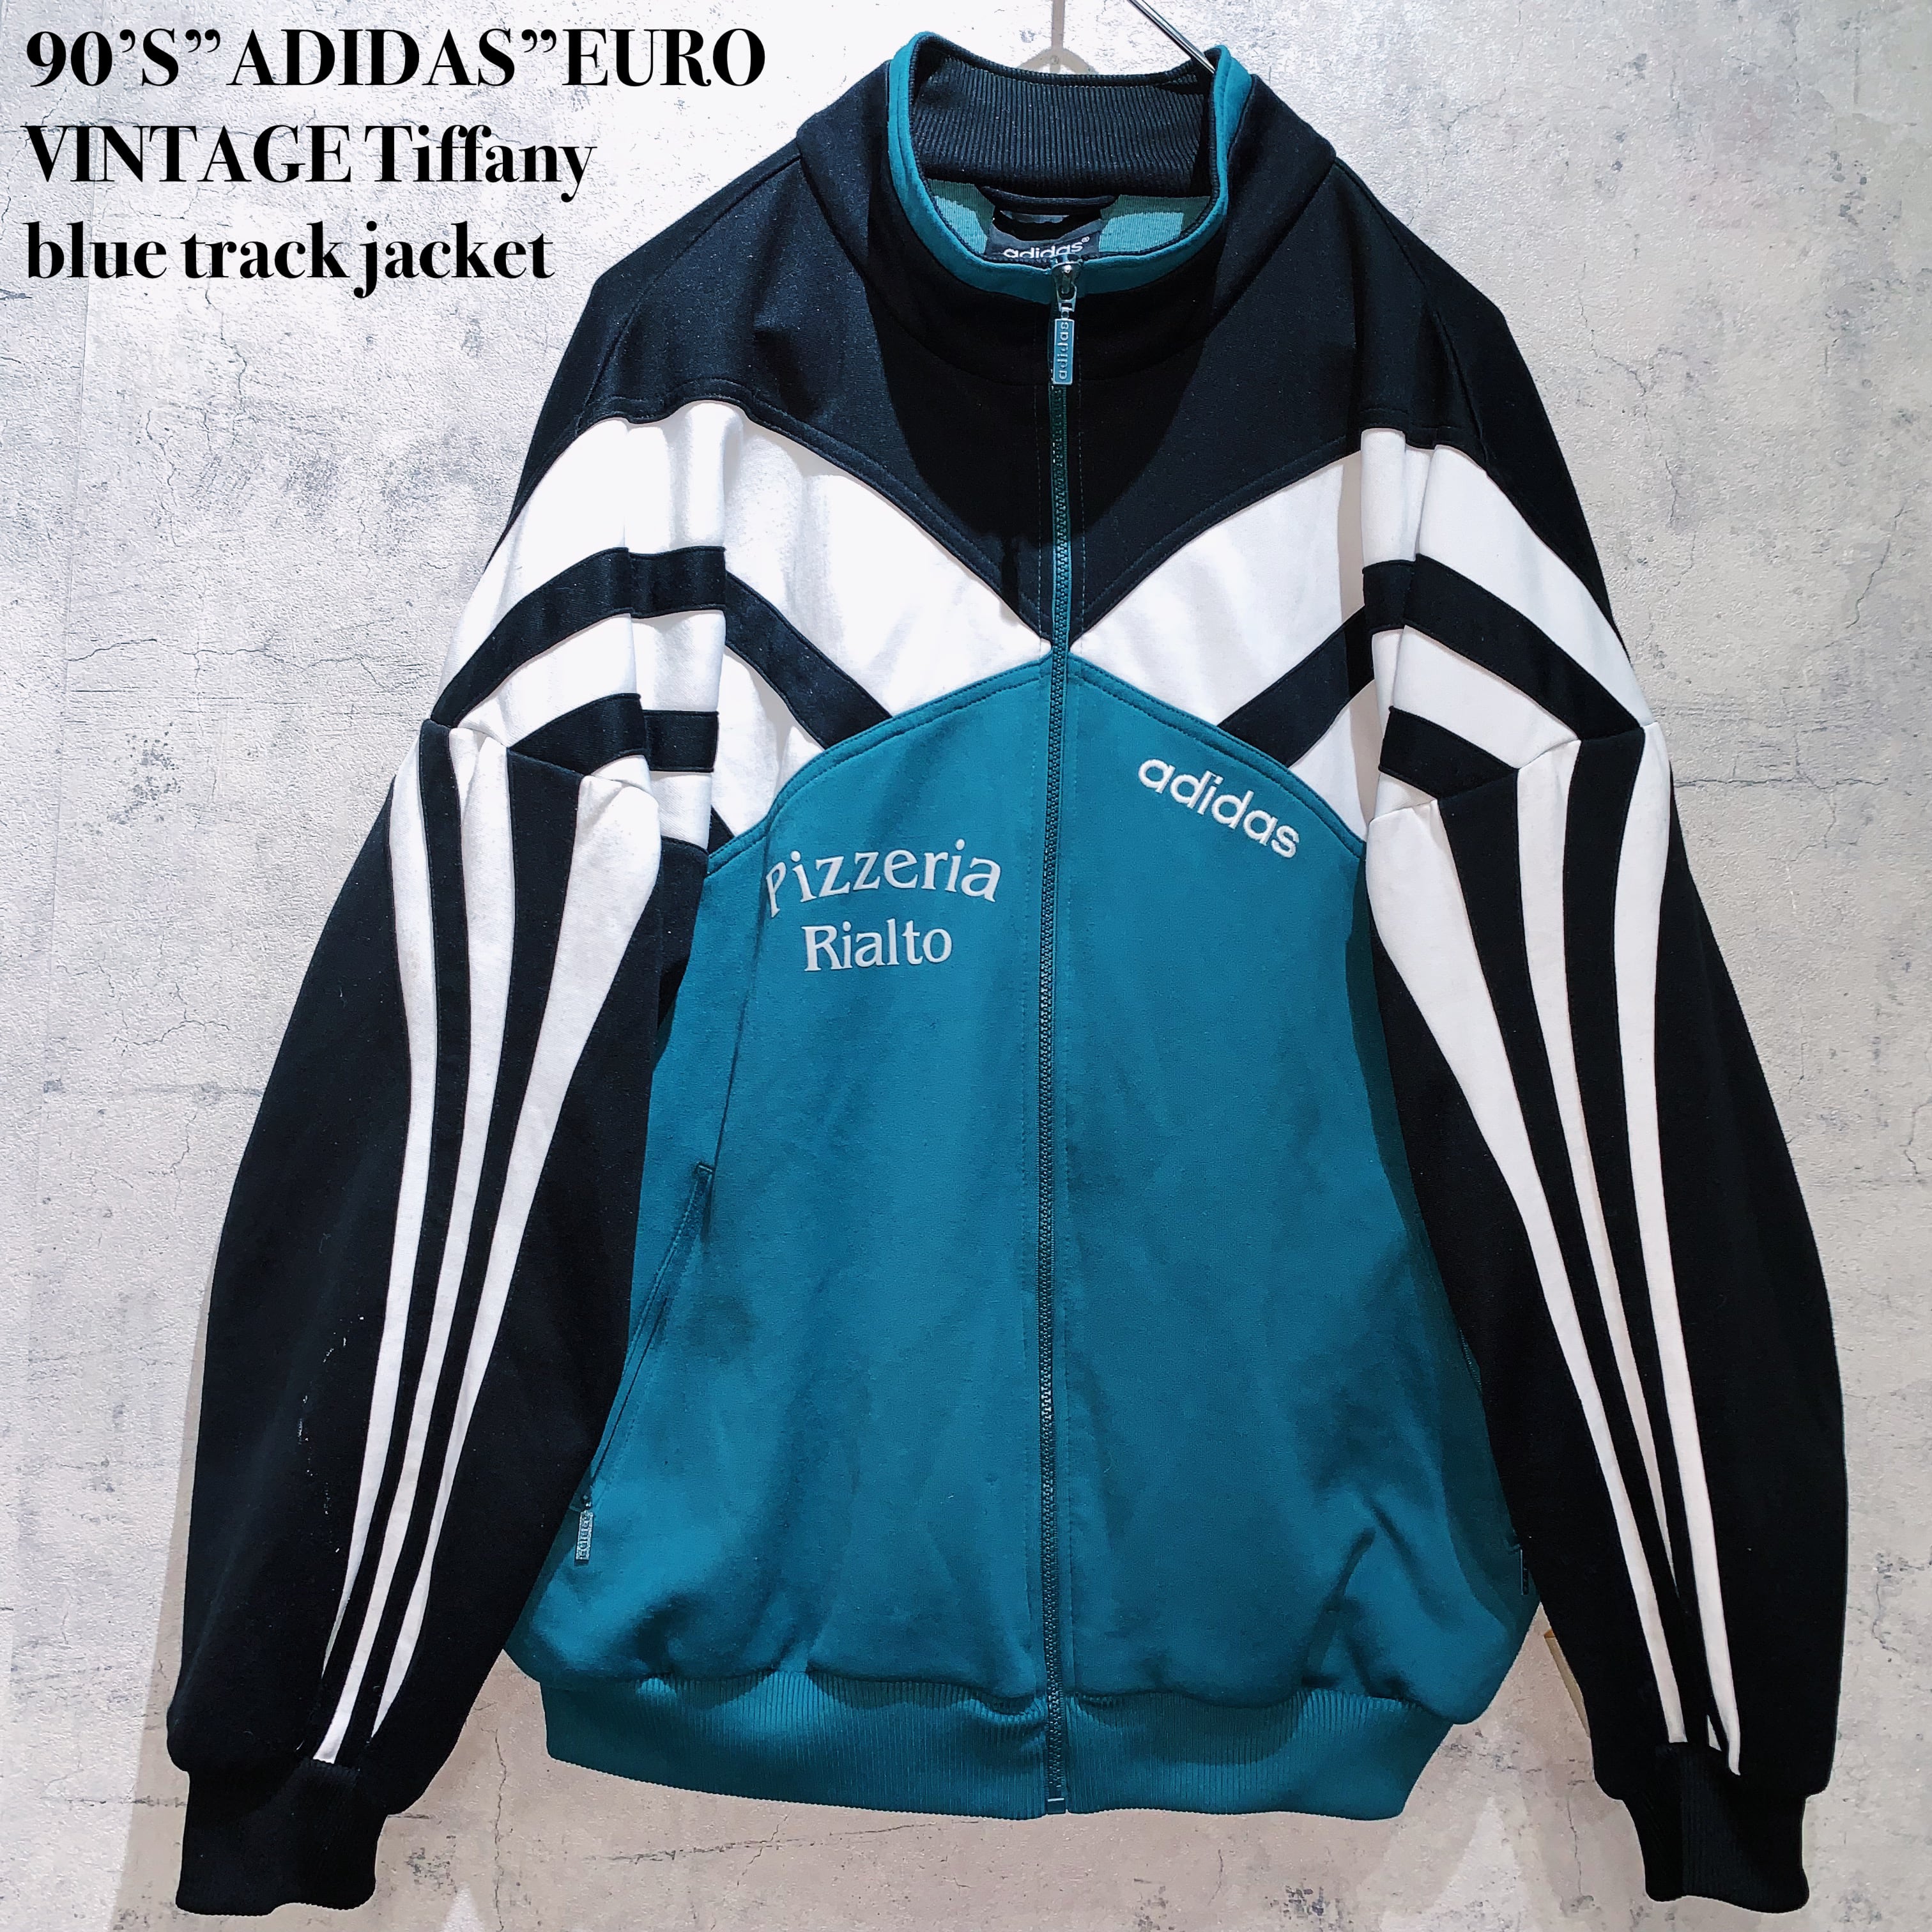 90’S”ADIDAS”EURO VINTAGE Tiffany blue track jacket | ayne powered by BASE